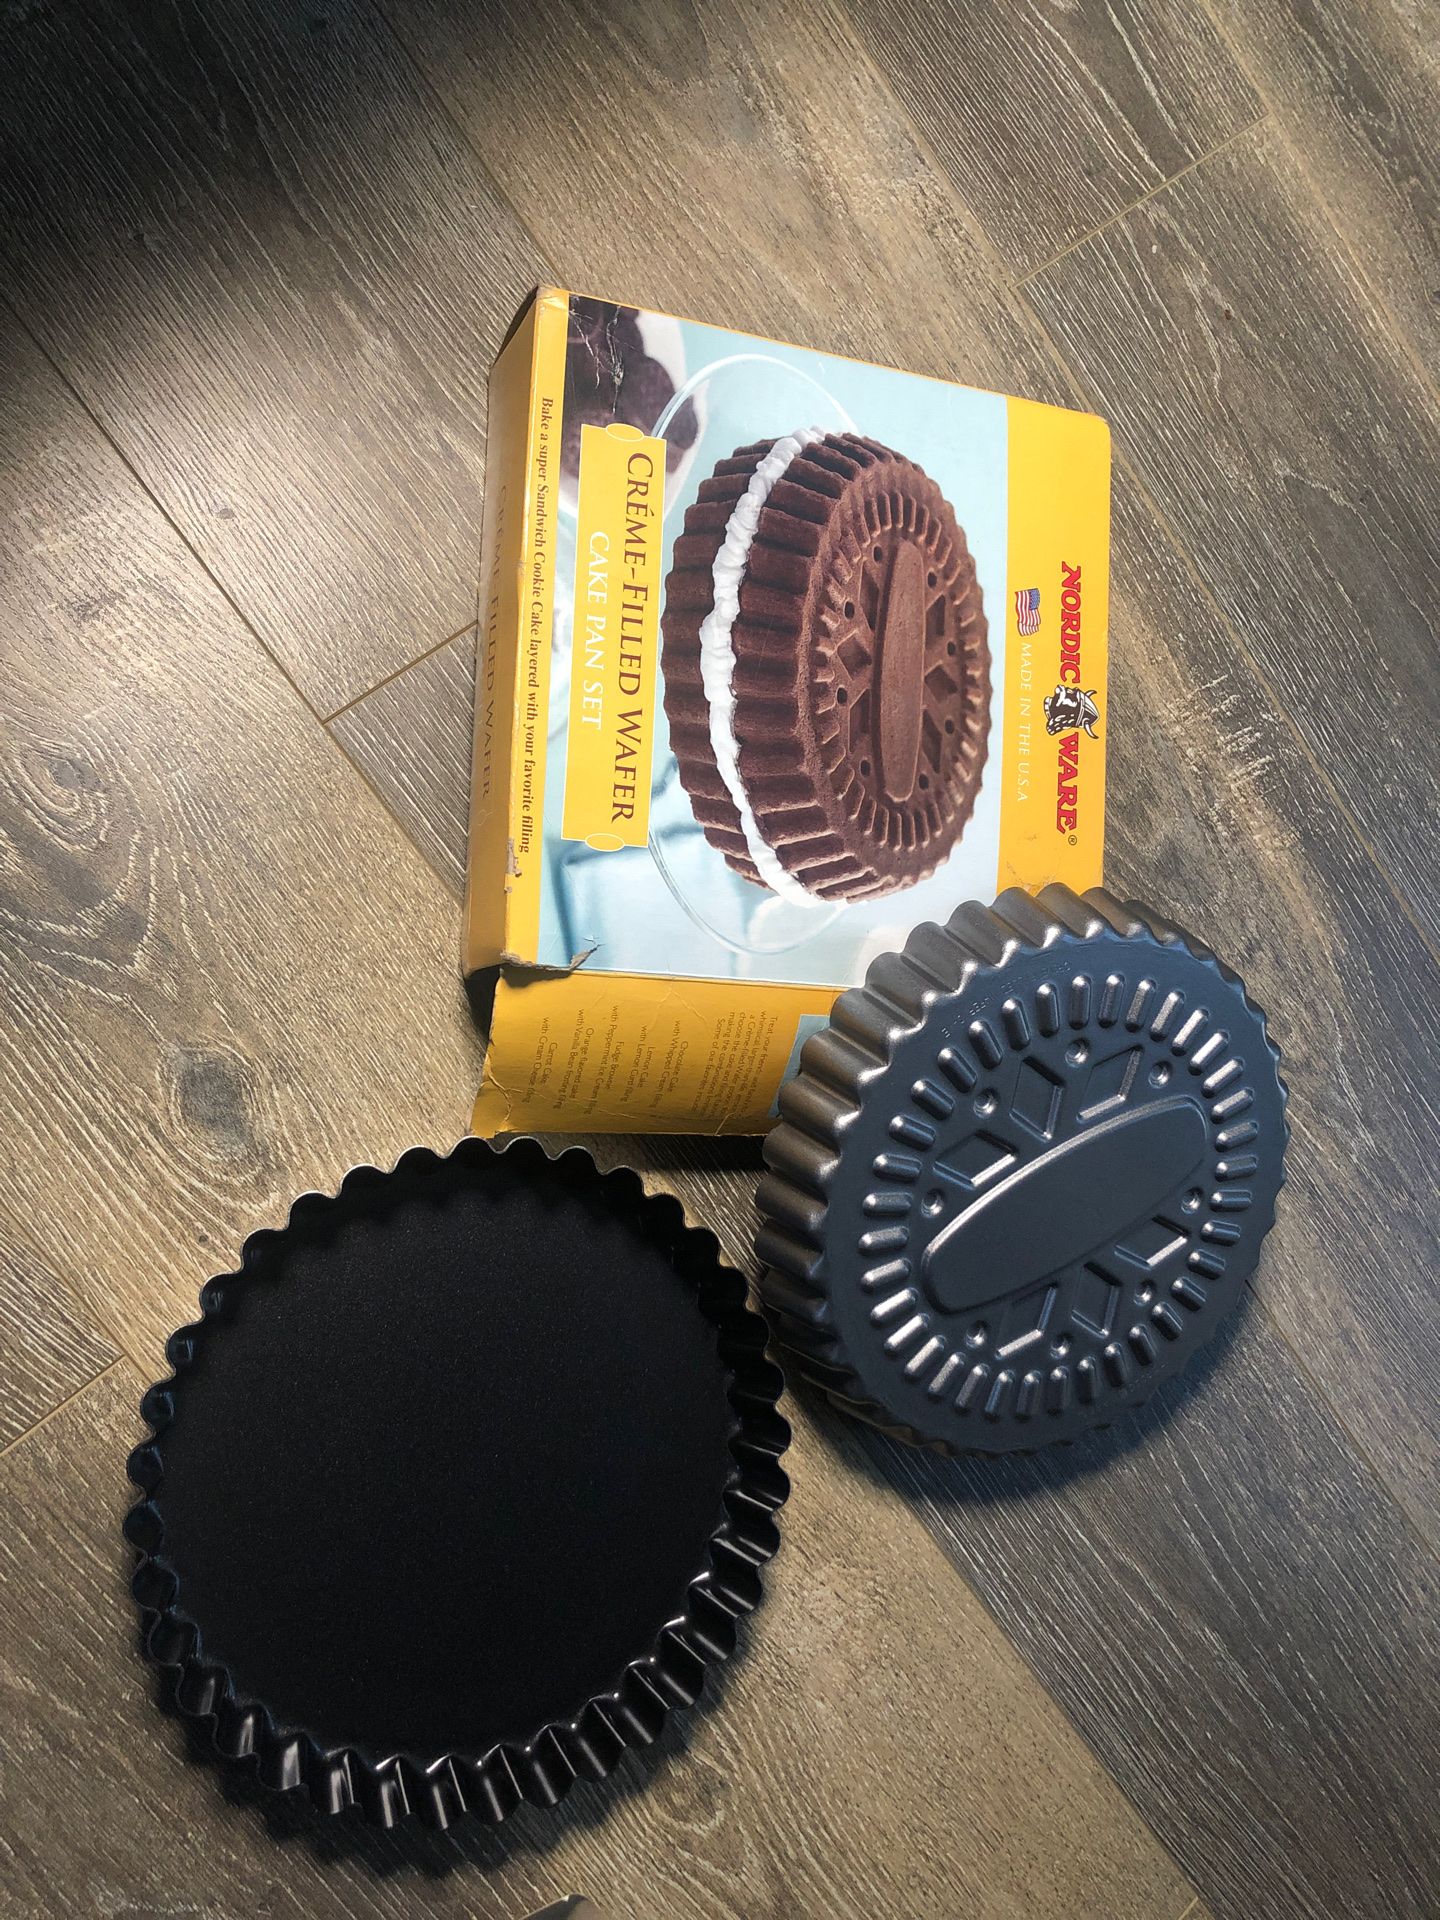 Nordic Ware cake pan set